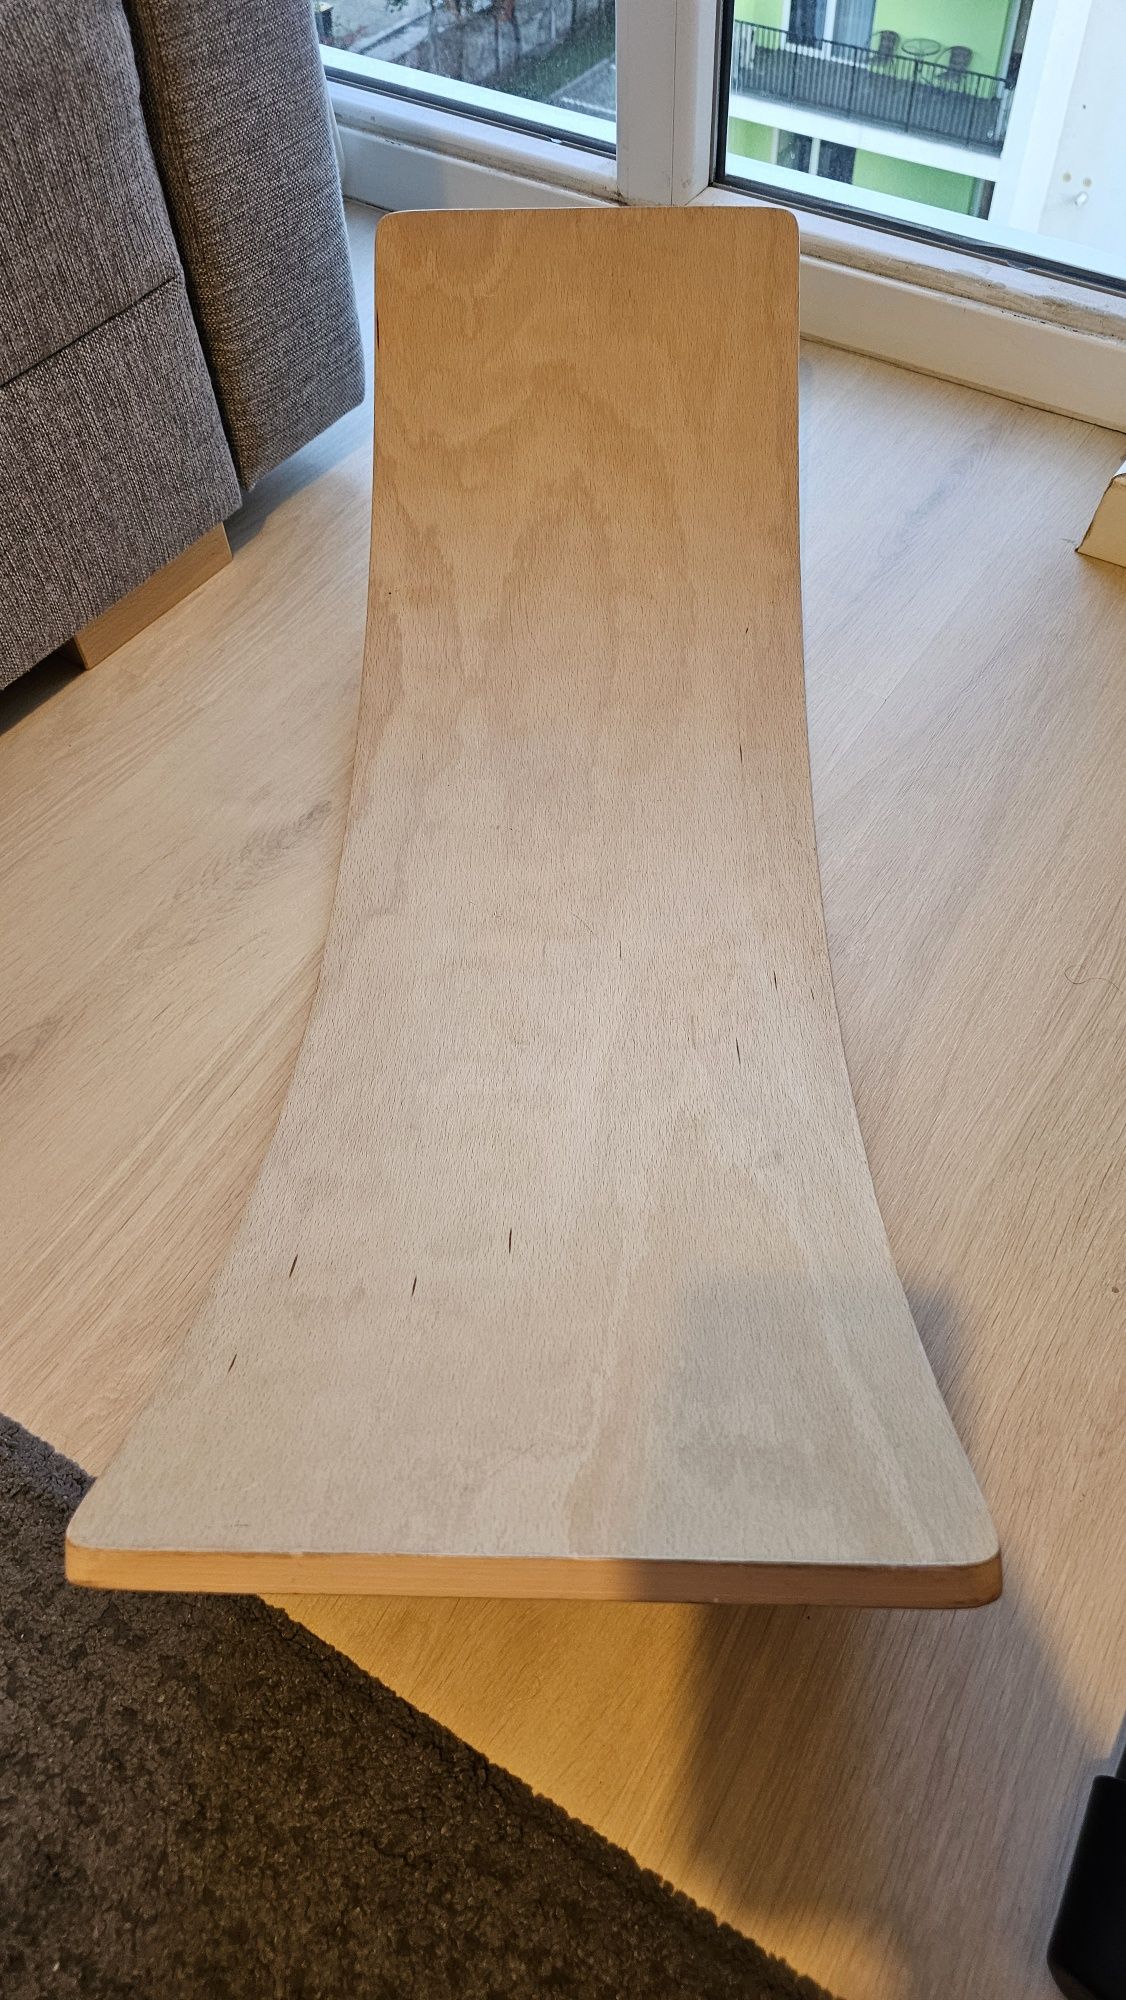 Balance board - placa de echilibru, din lemn, natur, stare buna